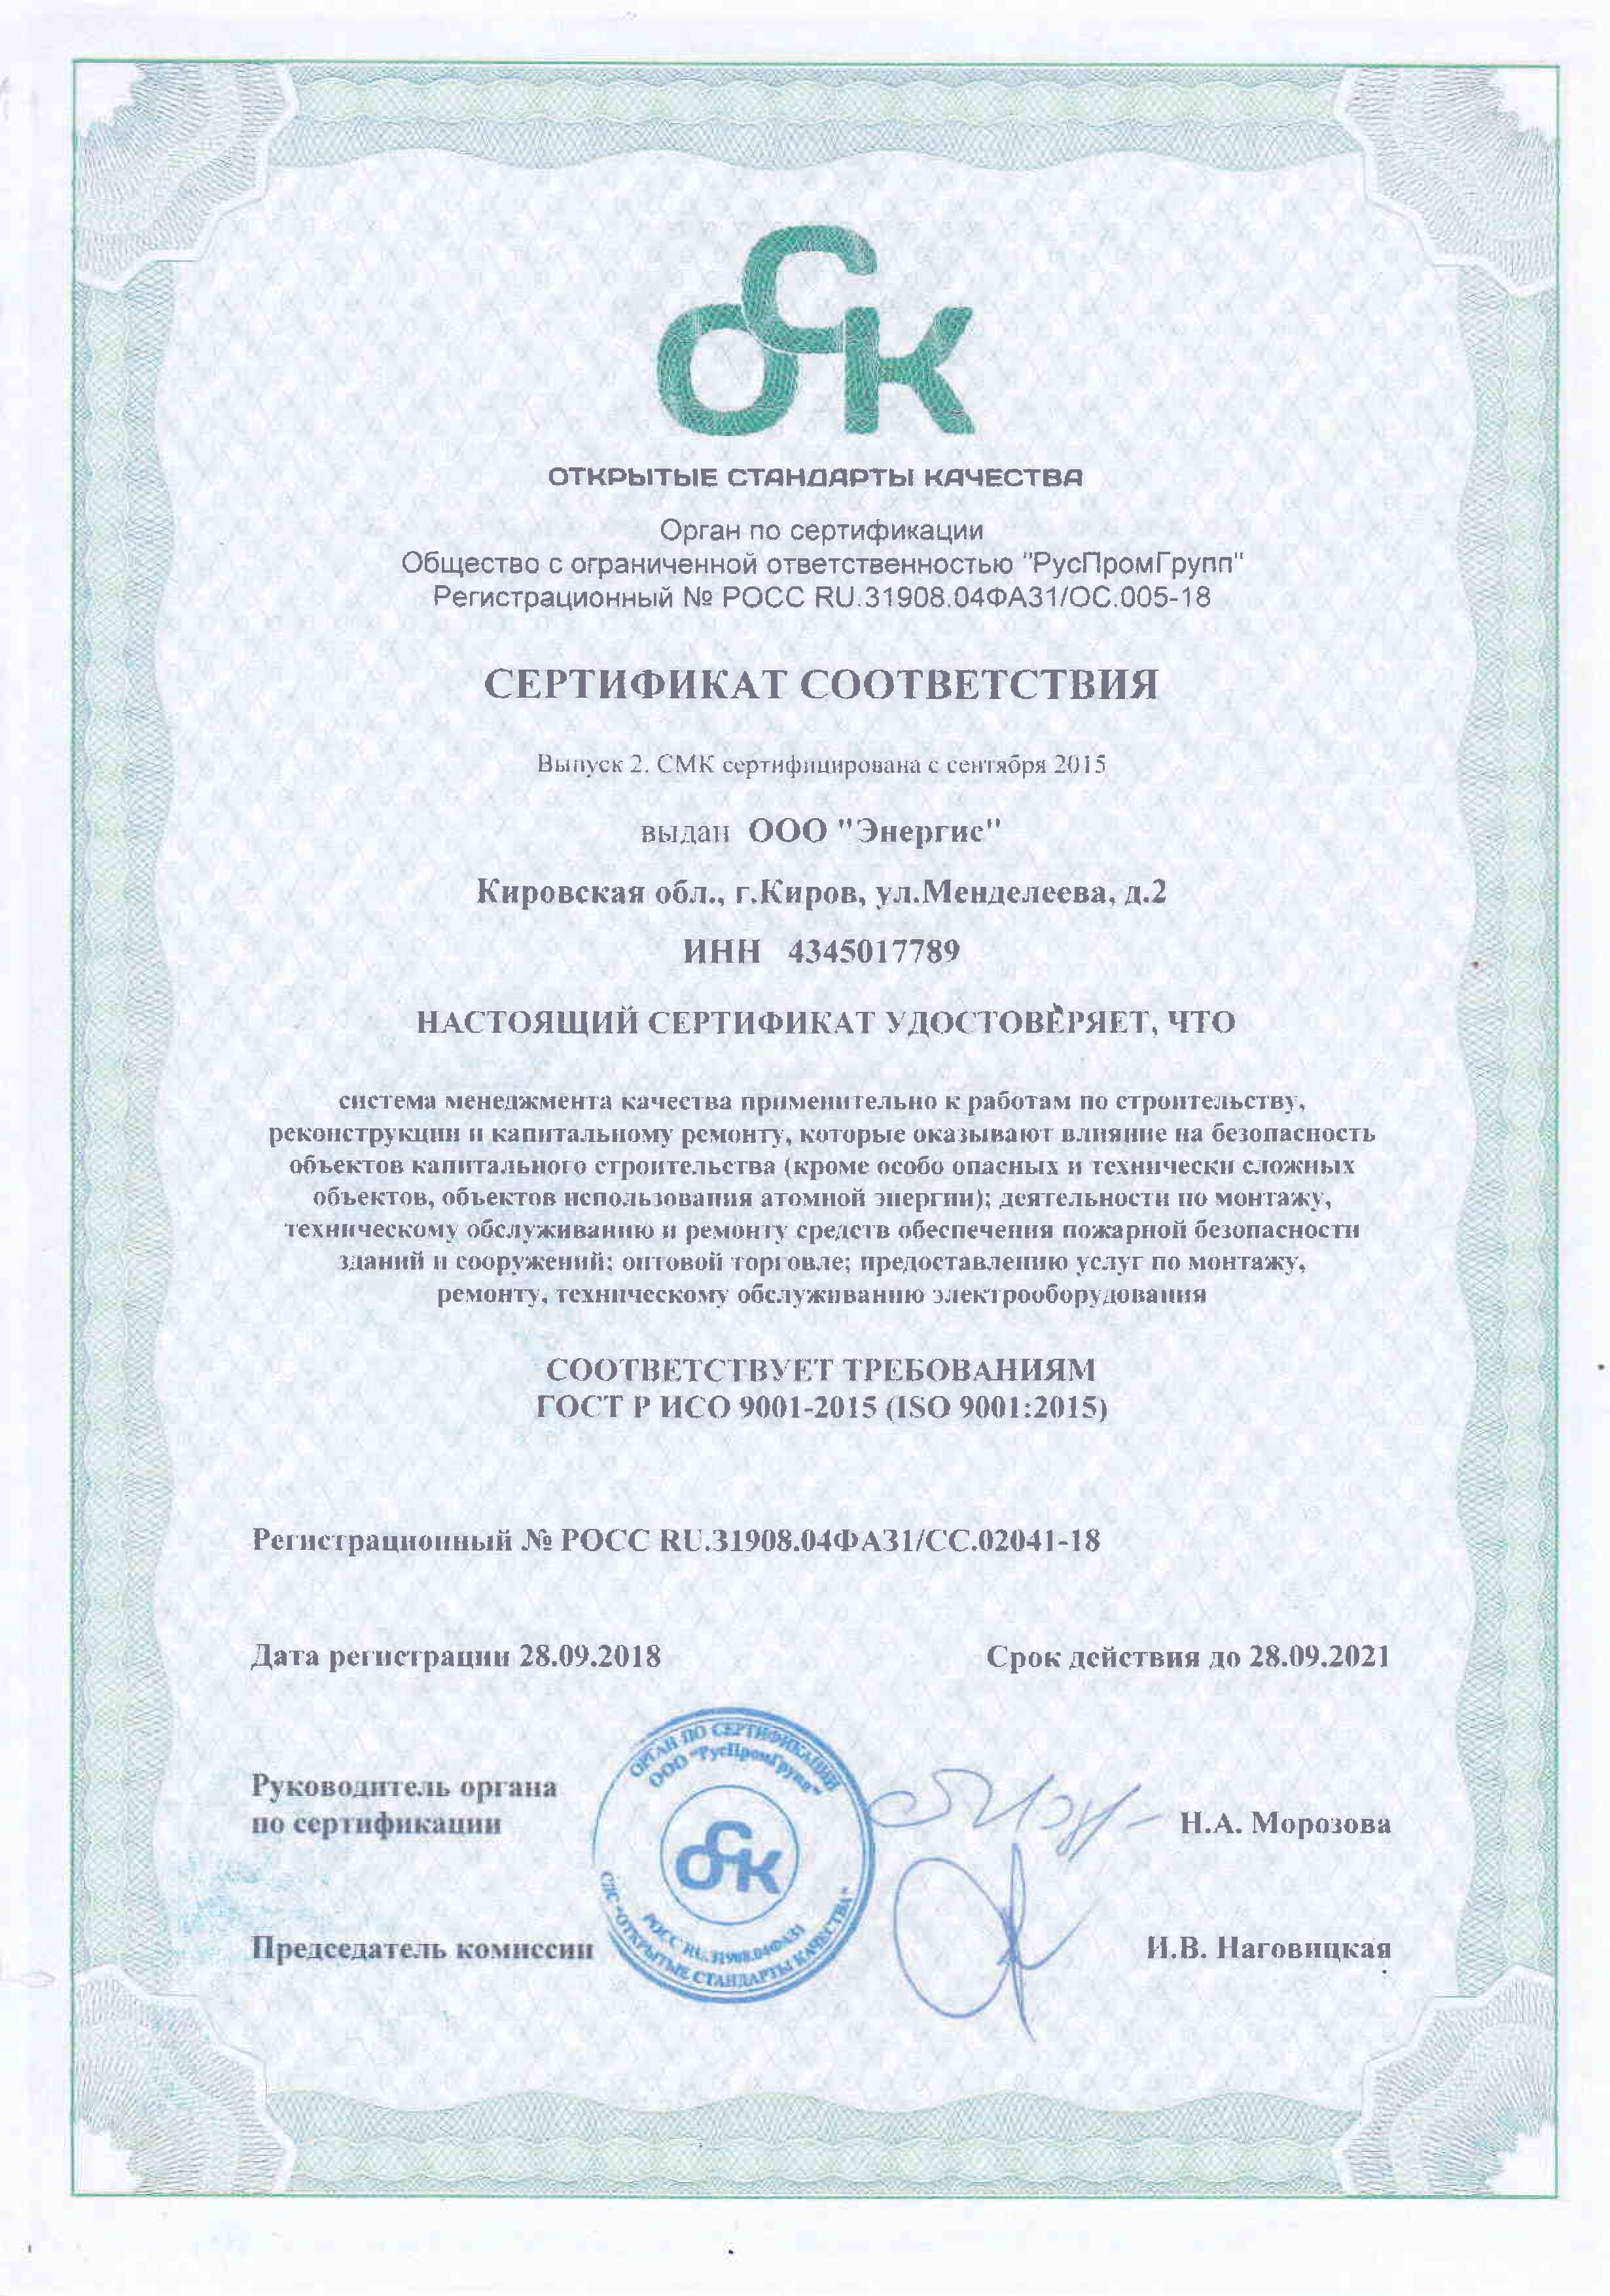 Система менеджмента качества ООО "Энергис" сертифицирована по ГОСТ ISO 9001-2011 (ISO 9001:2008).